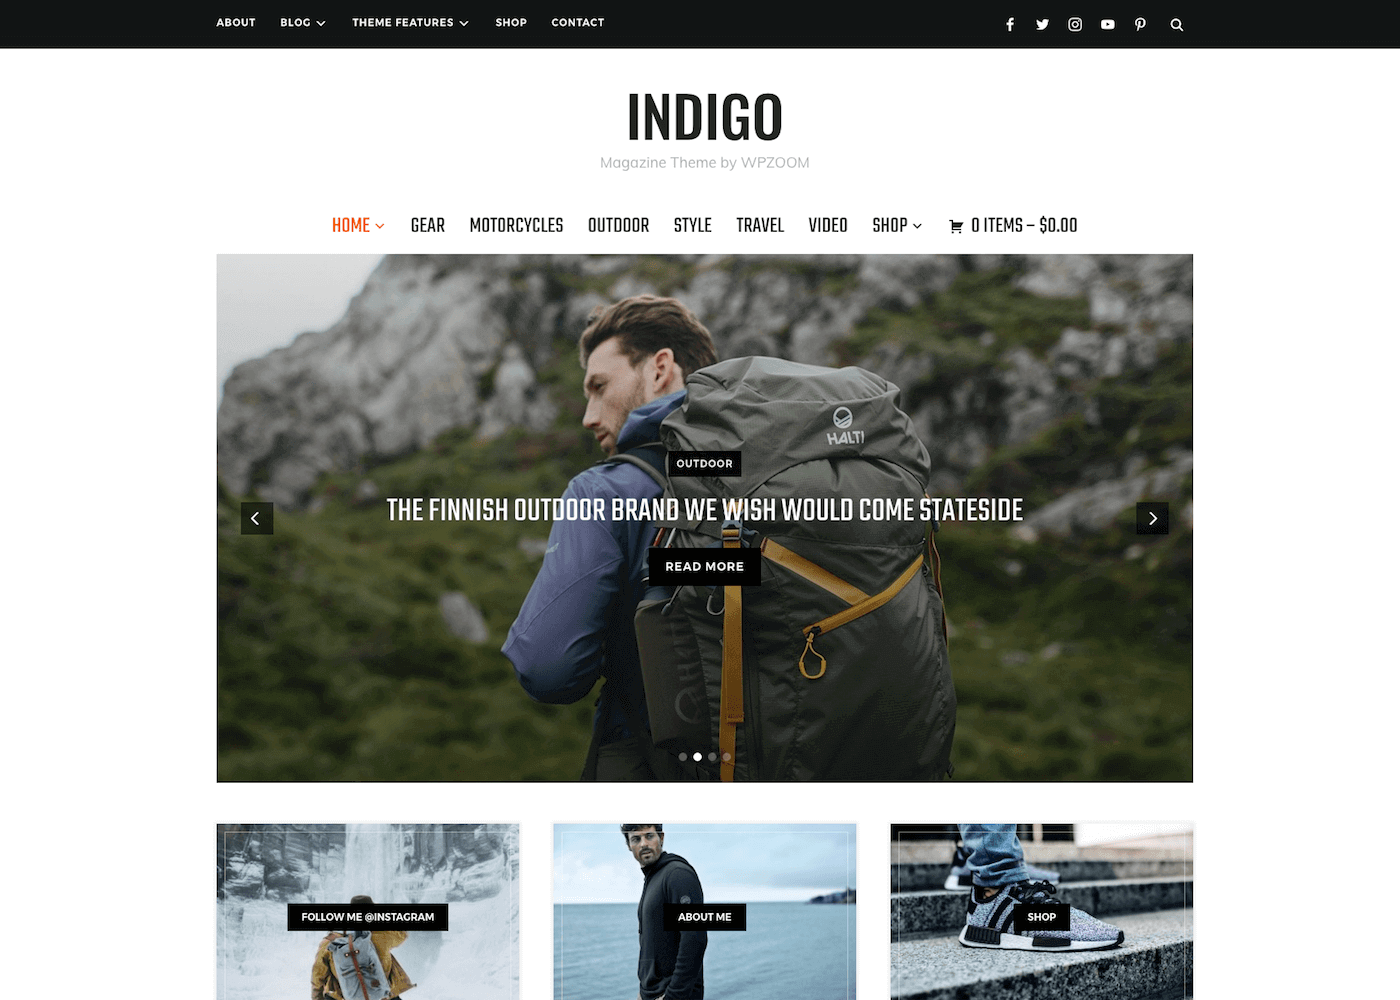 Indigo magazine